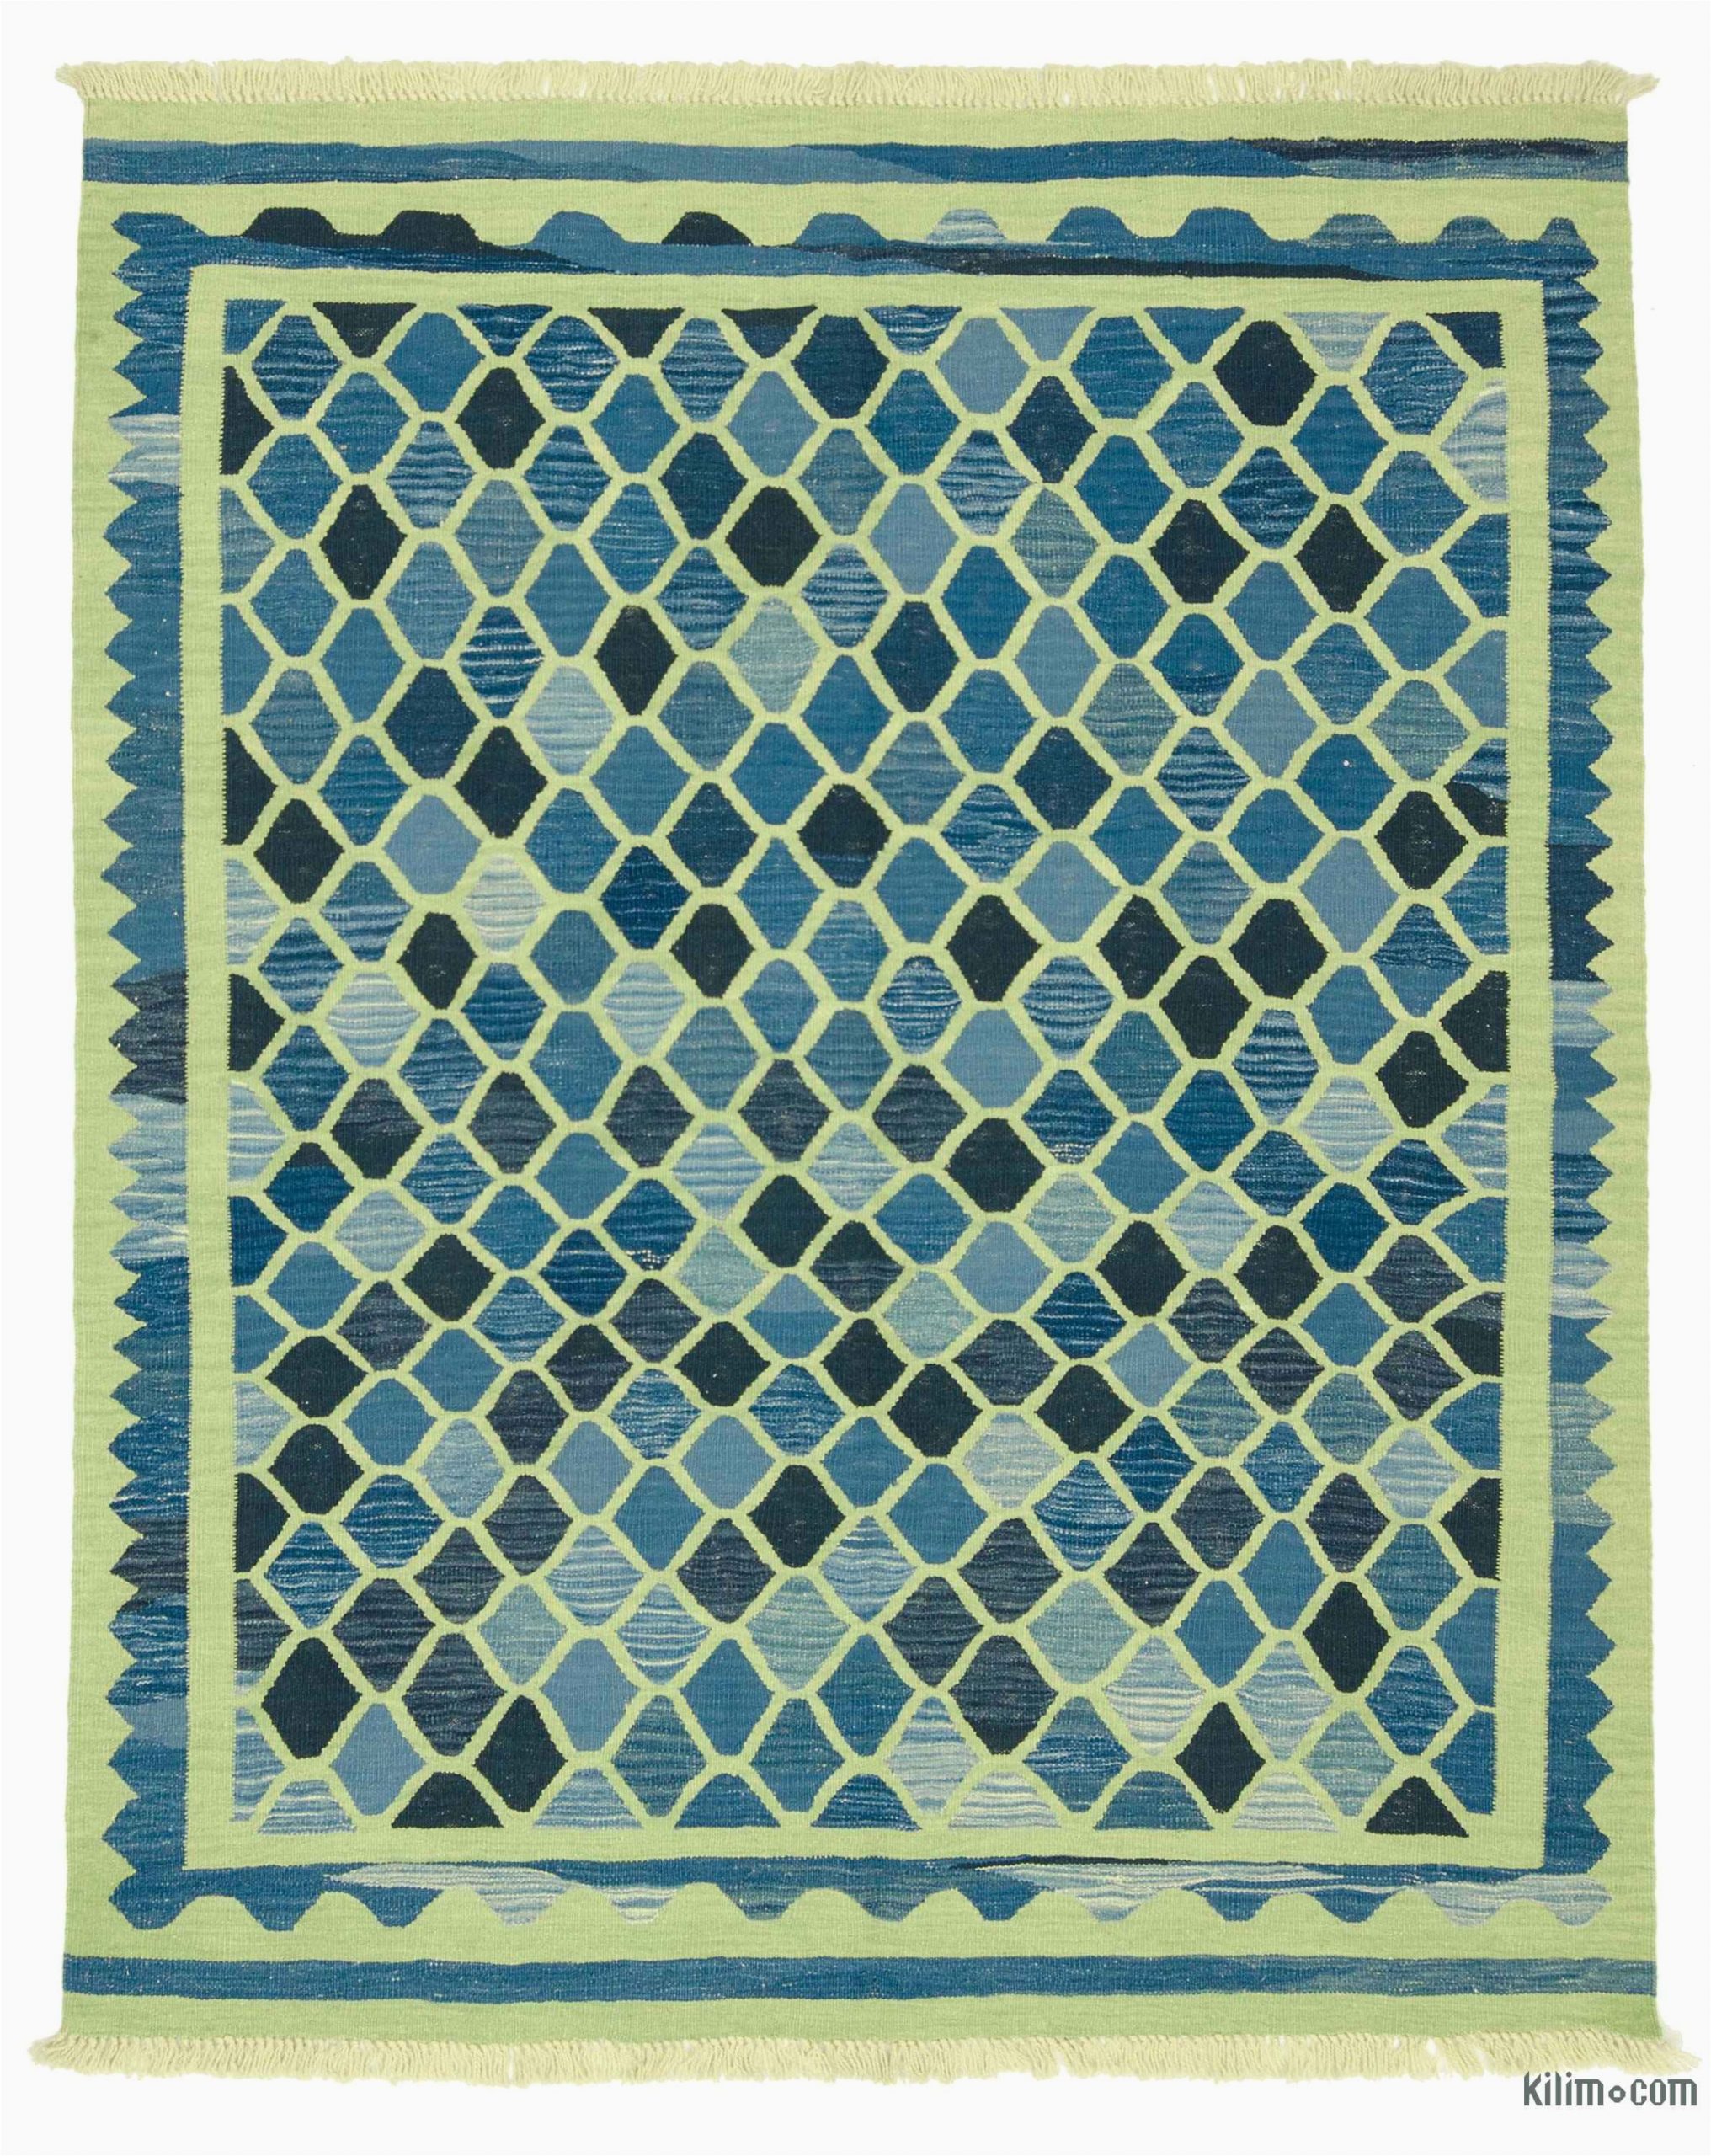 k0004803 new turkish kilim rug